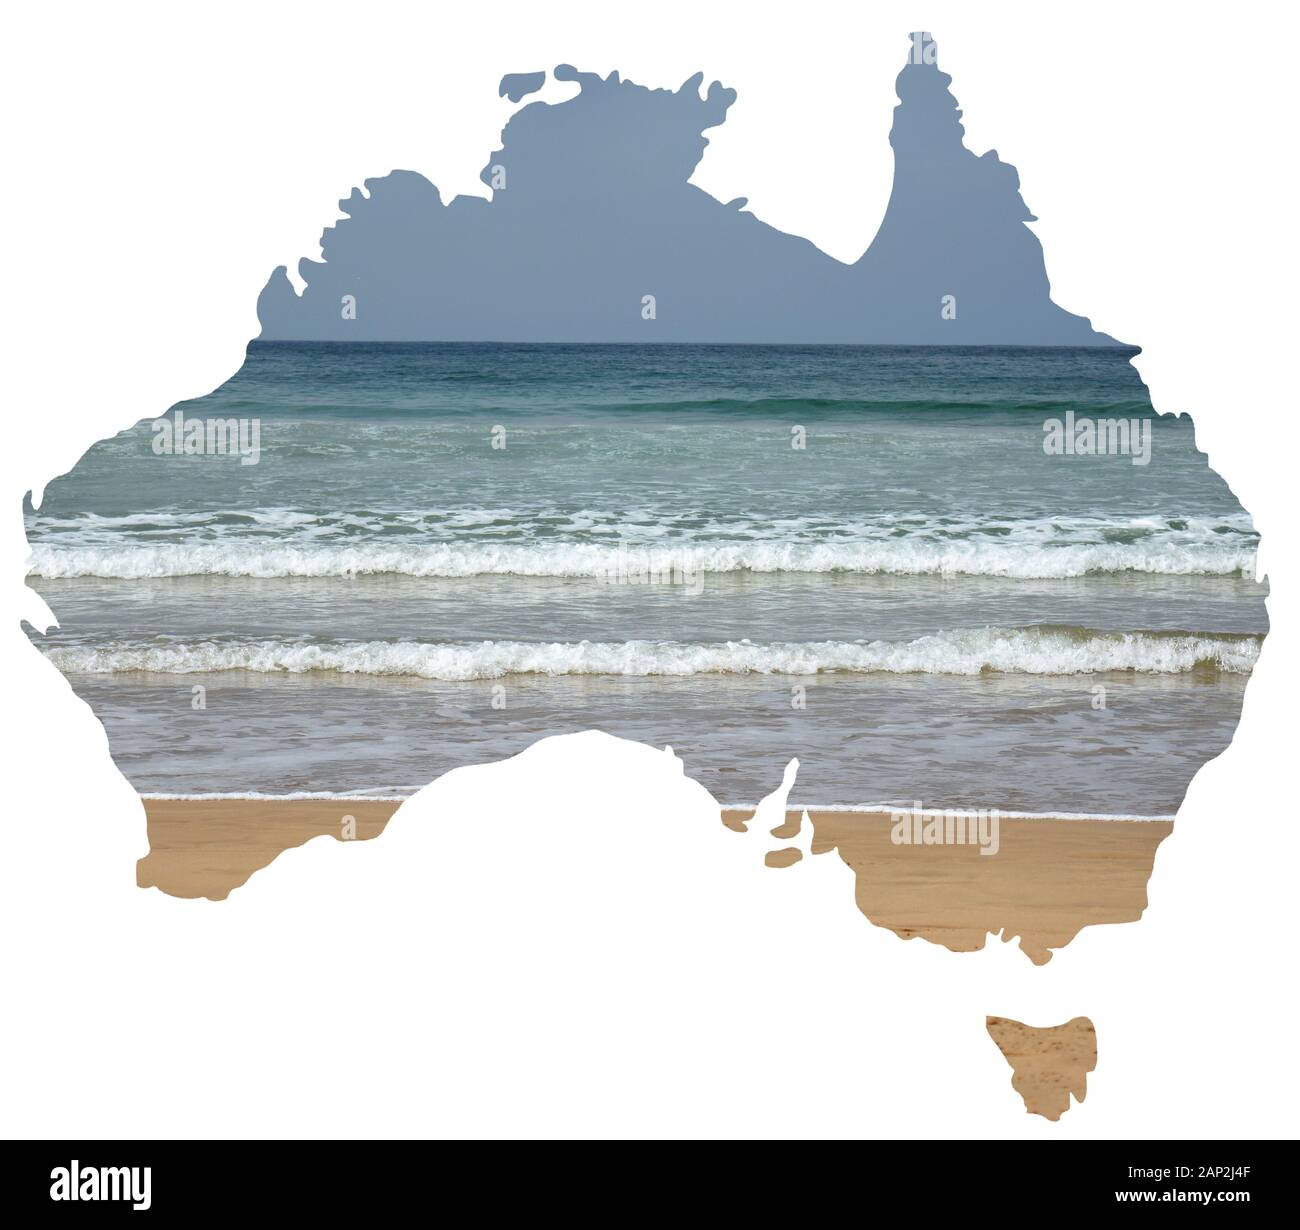 Une série de vues sur les paysages naturels et les paysages de l'Australie se trouve sur une carte du pays Banque D'Images